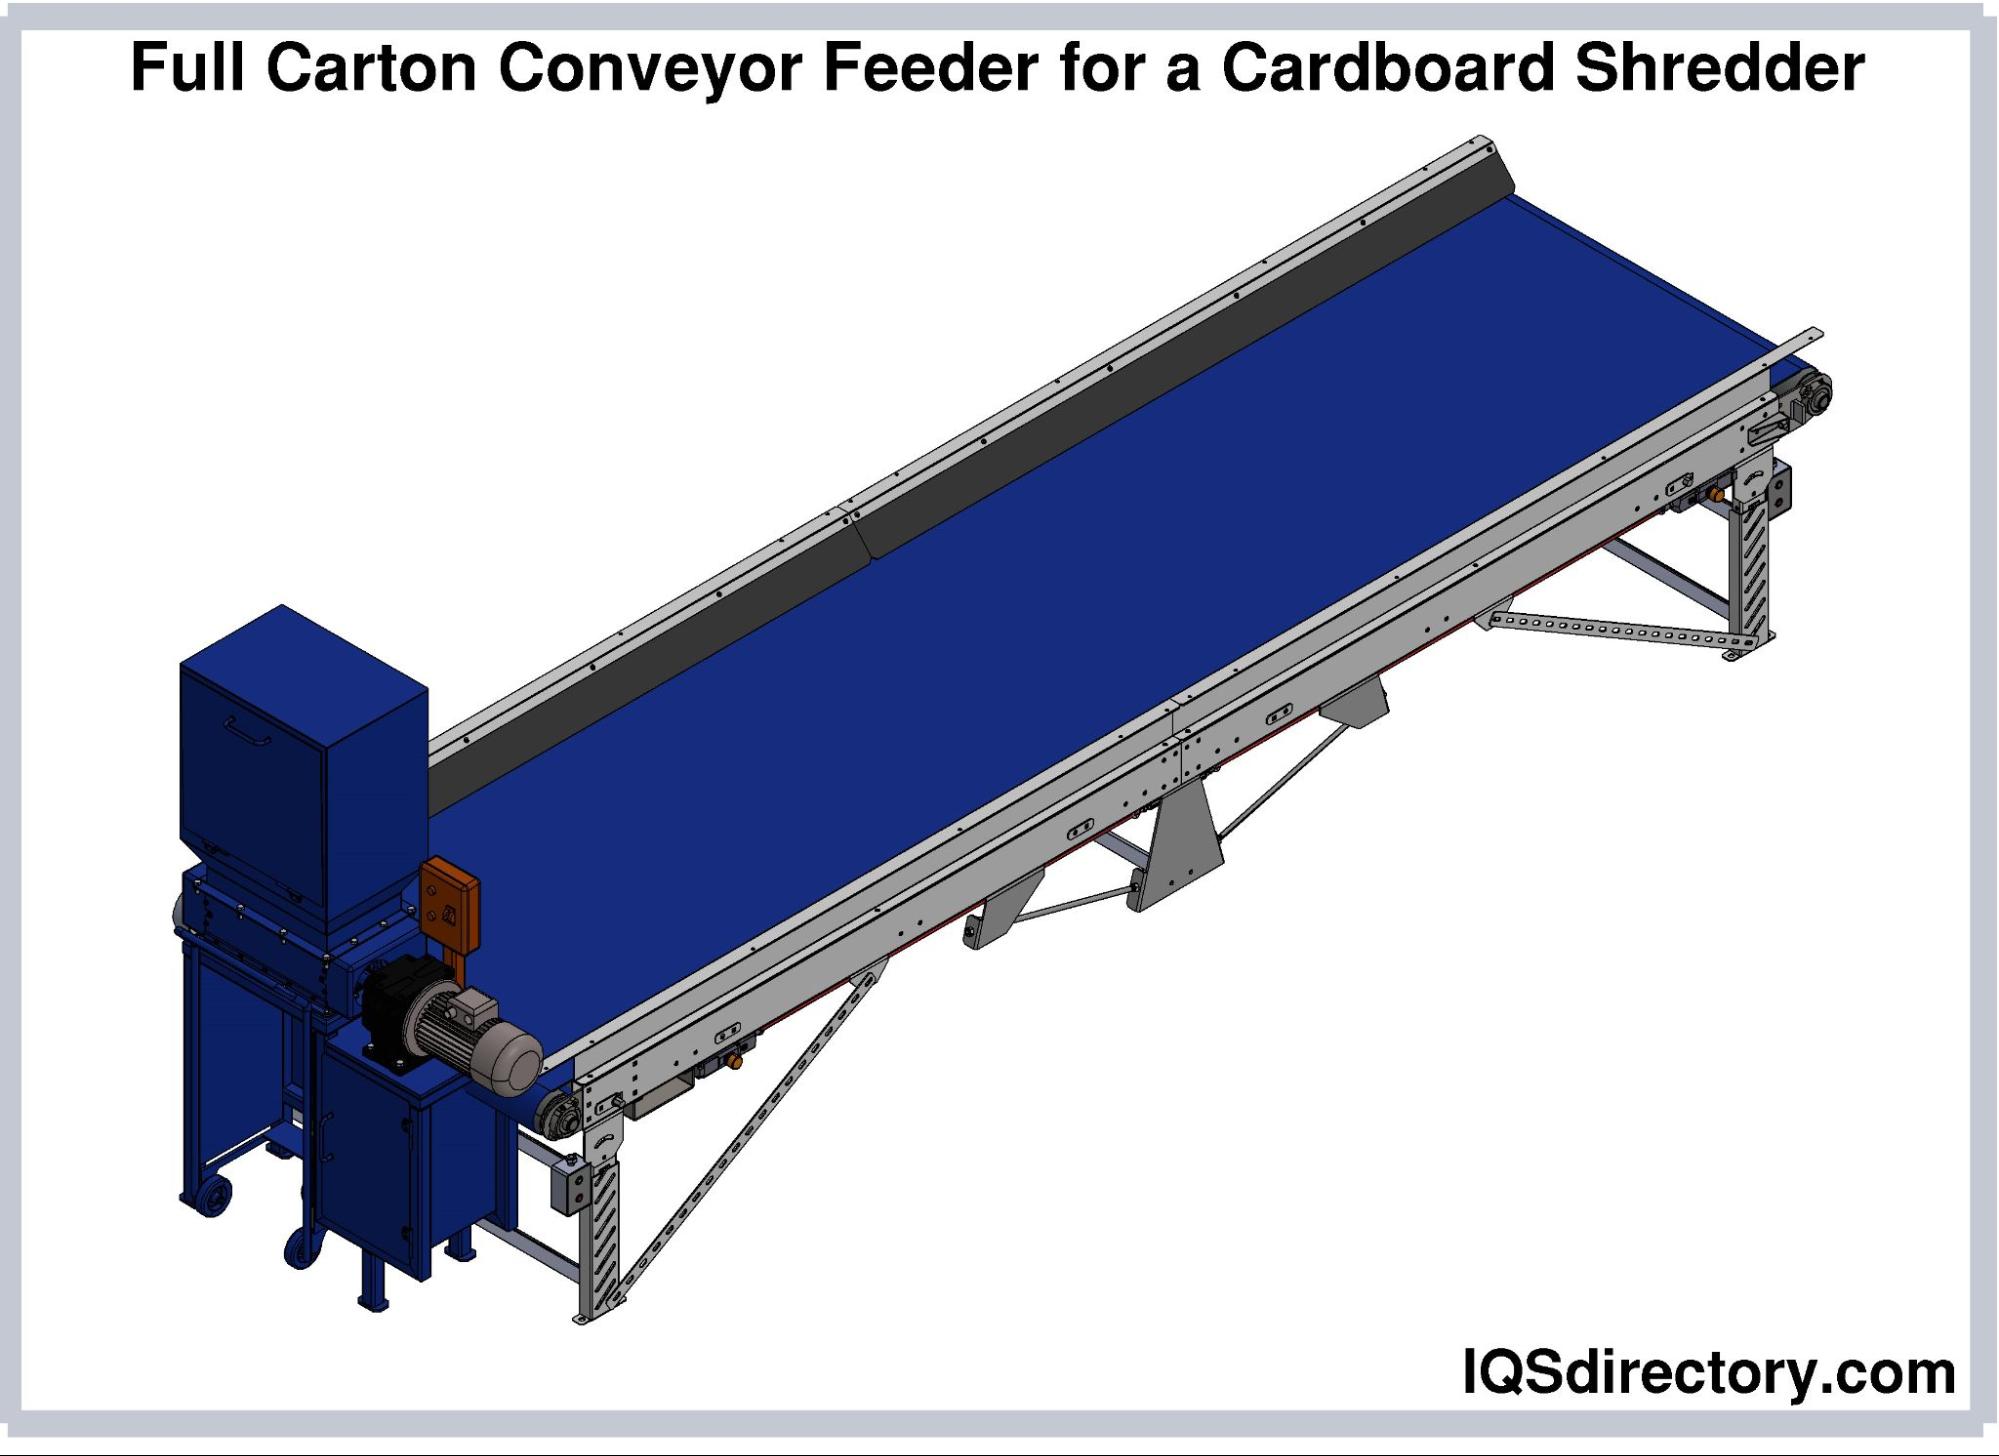 Cardboard Shredder Feeder